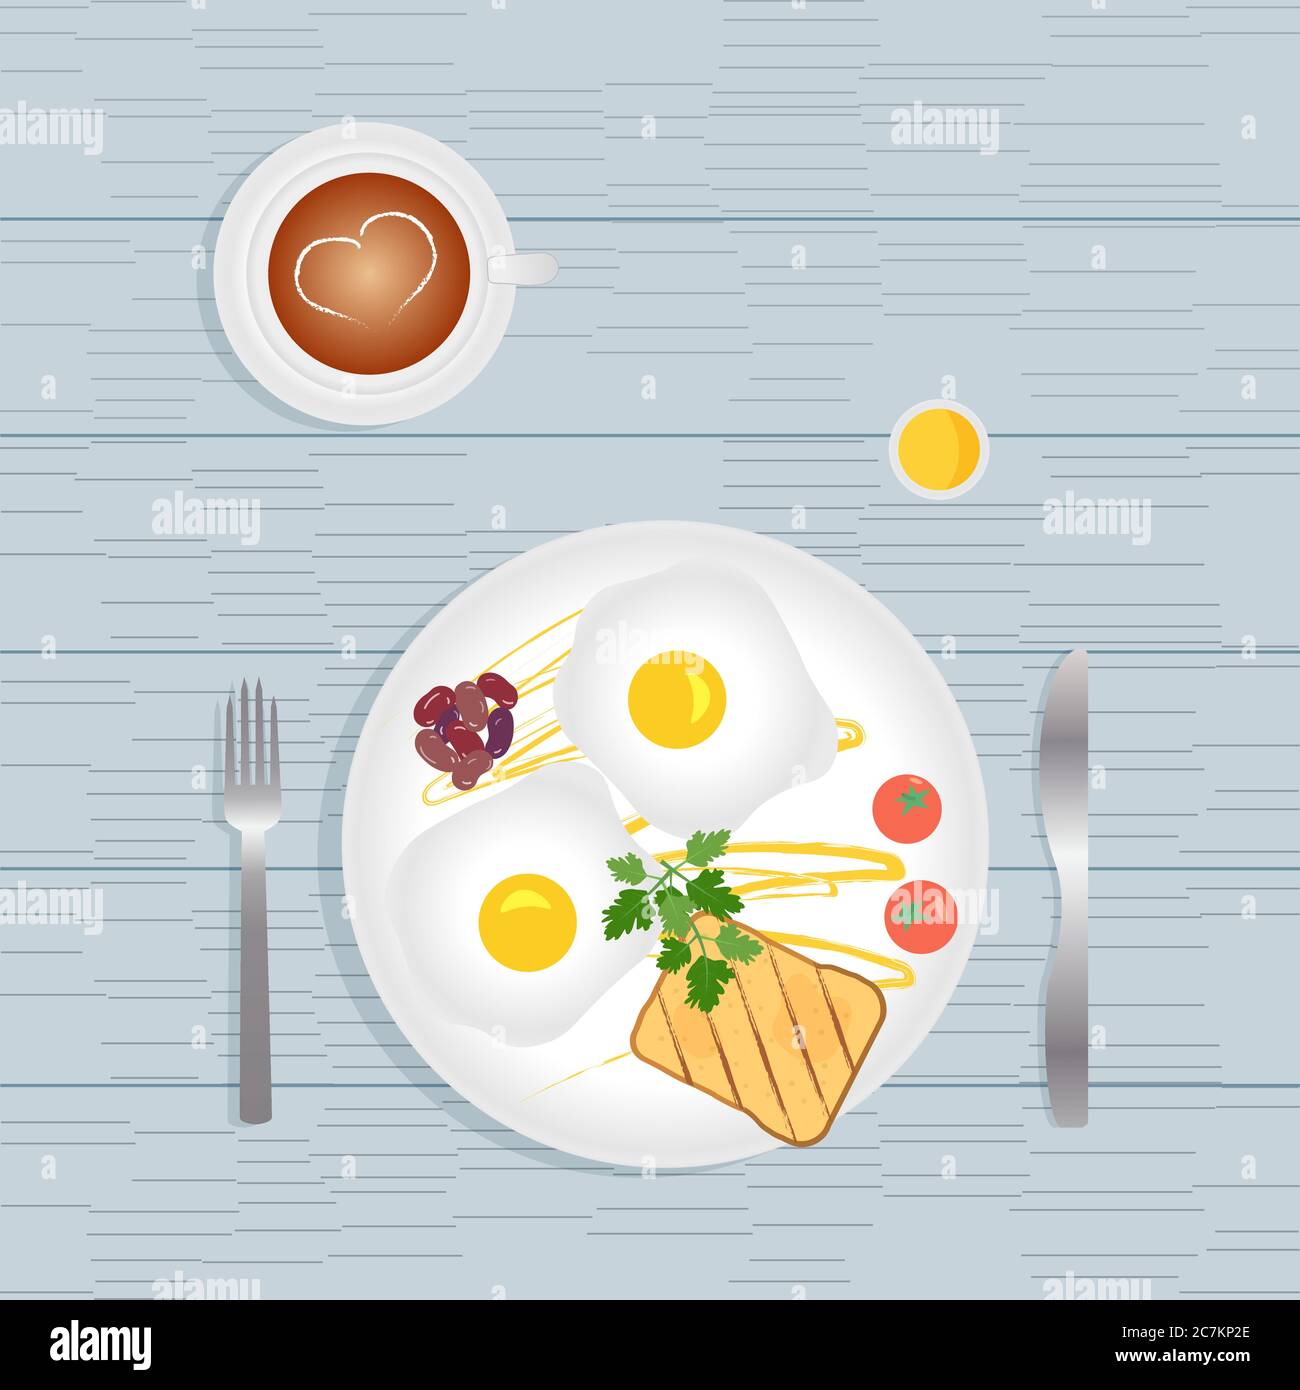 Frühstück und gesunde Mahlzeiten am Morgen - Spiegeleier, Toast, Gemüse, Tomaten, Bohnen, Petersilie und Sauce. Kaffee Latte mit Herzmuster Stock Vektor